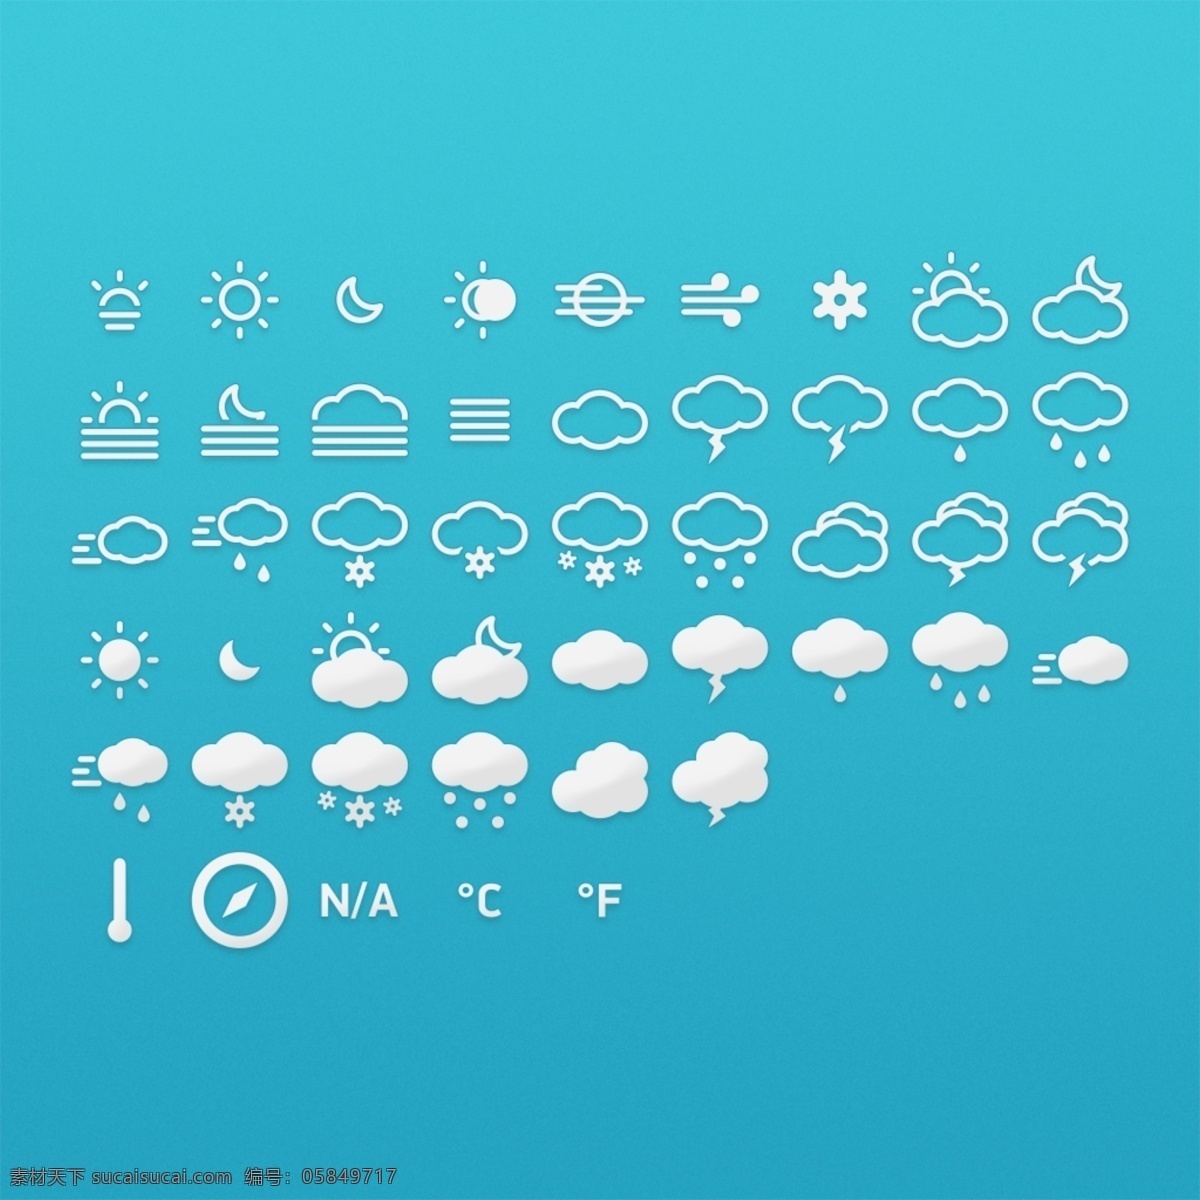 网页 天气 控件 图标 天气控件设计 天气控件 天气图标 天气icon icon设计 icon 太阳图标 下雨图标 阴天图标 雨天 下雪图标 打雷图标 温度计